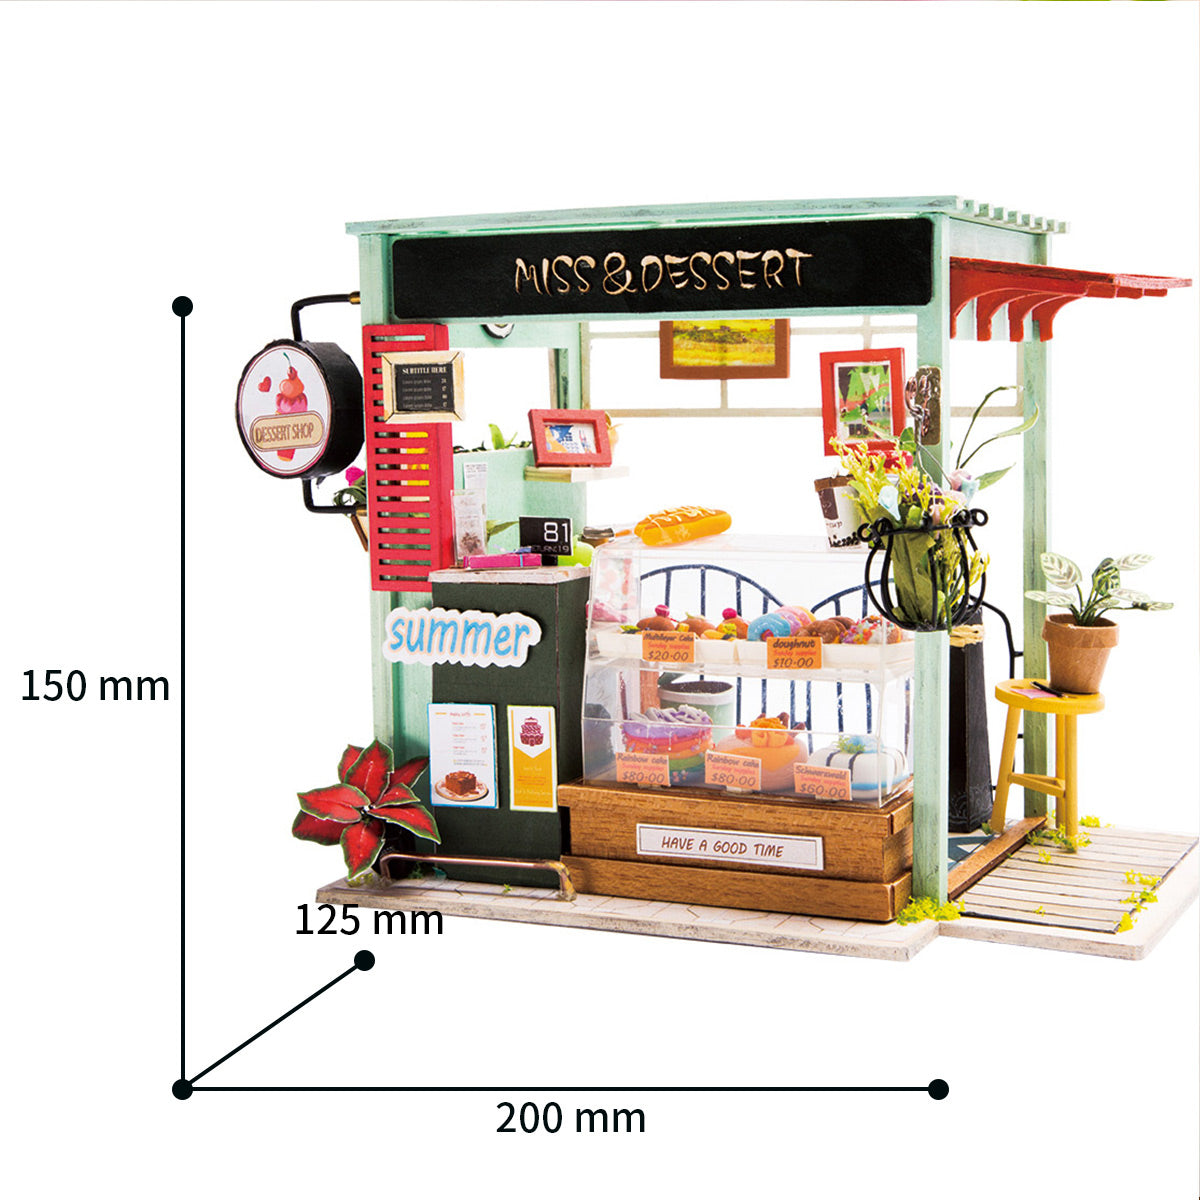 Miniature House - Dessert Shop